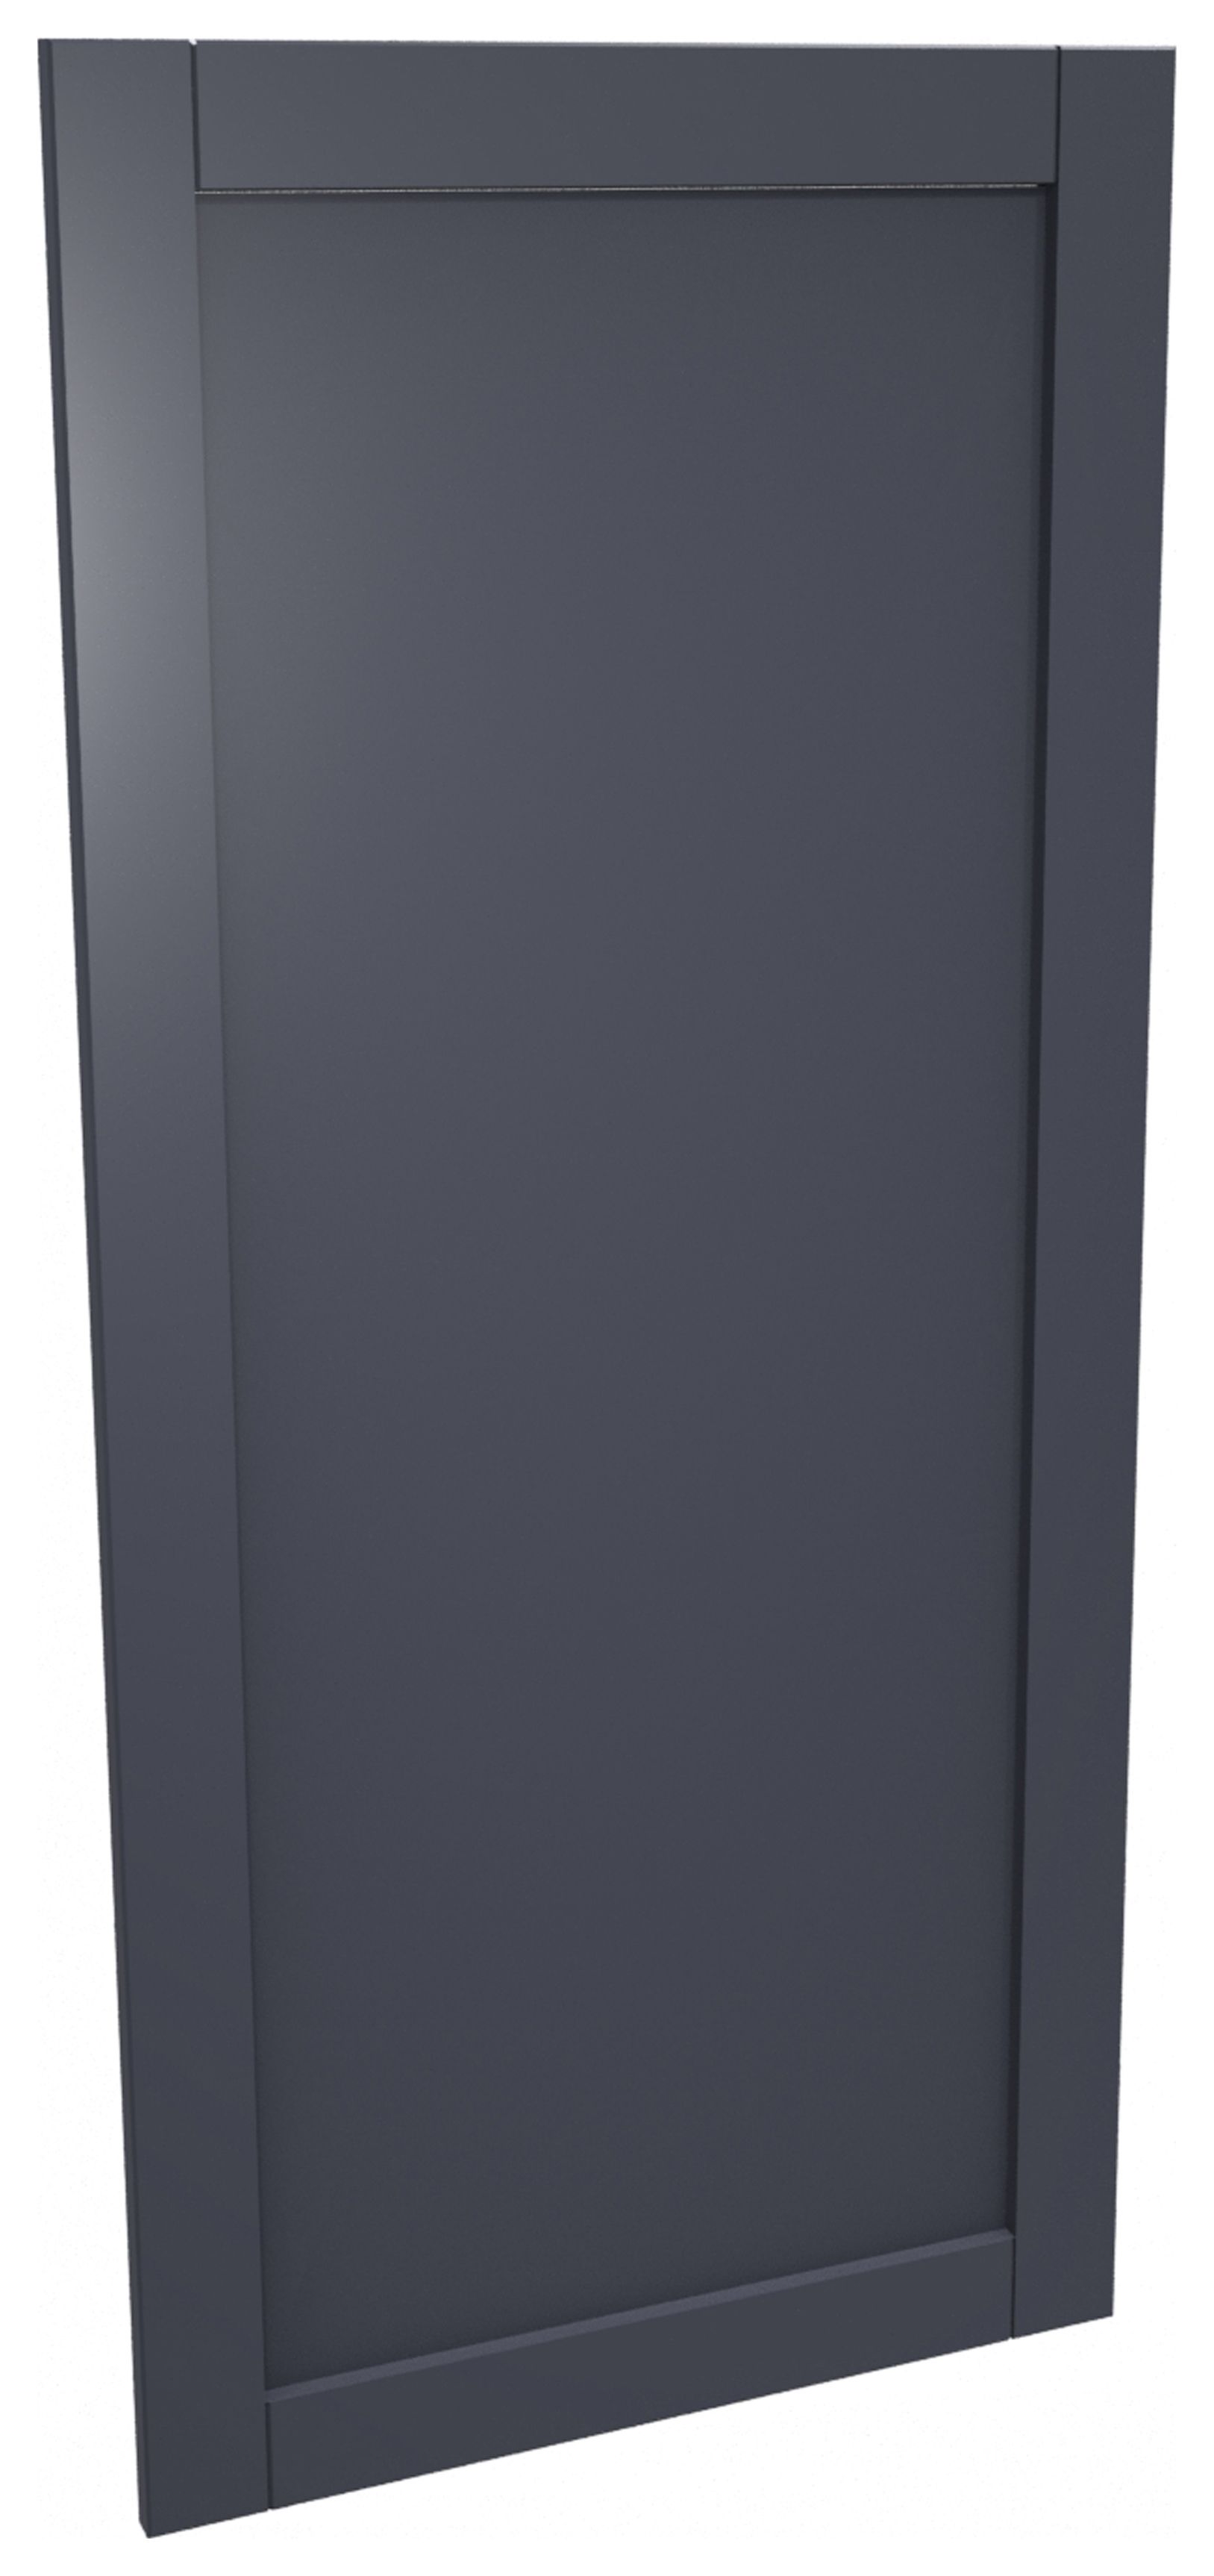 Ohio Navy Shaker Appliance Door (A) - 600 x 1319mm